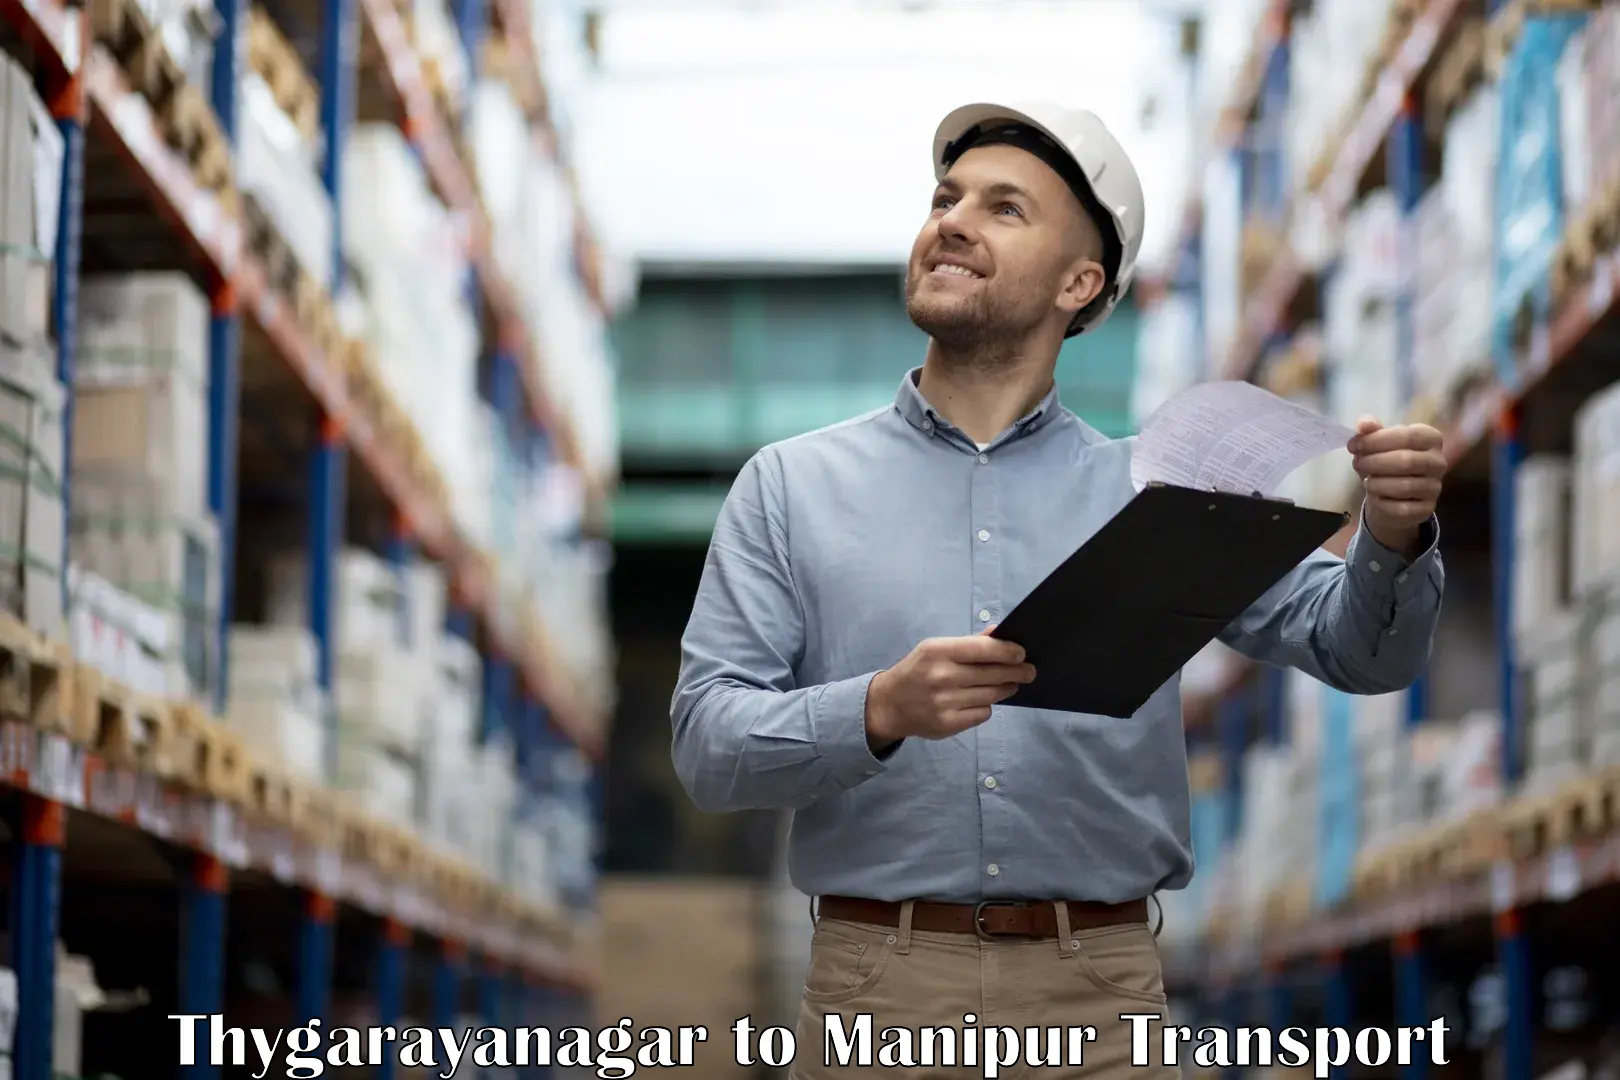 Shipping partner Thygarayanagar to NIT Manipur